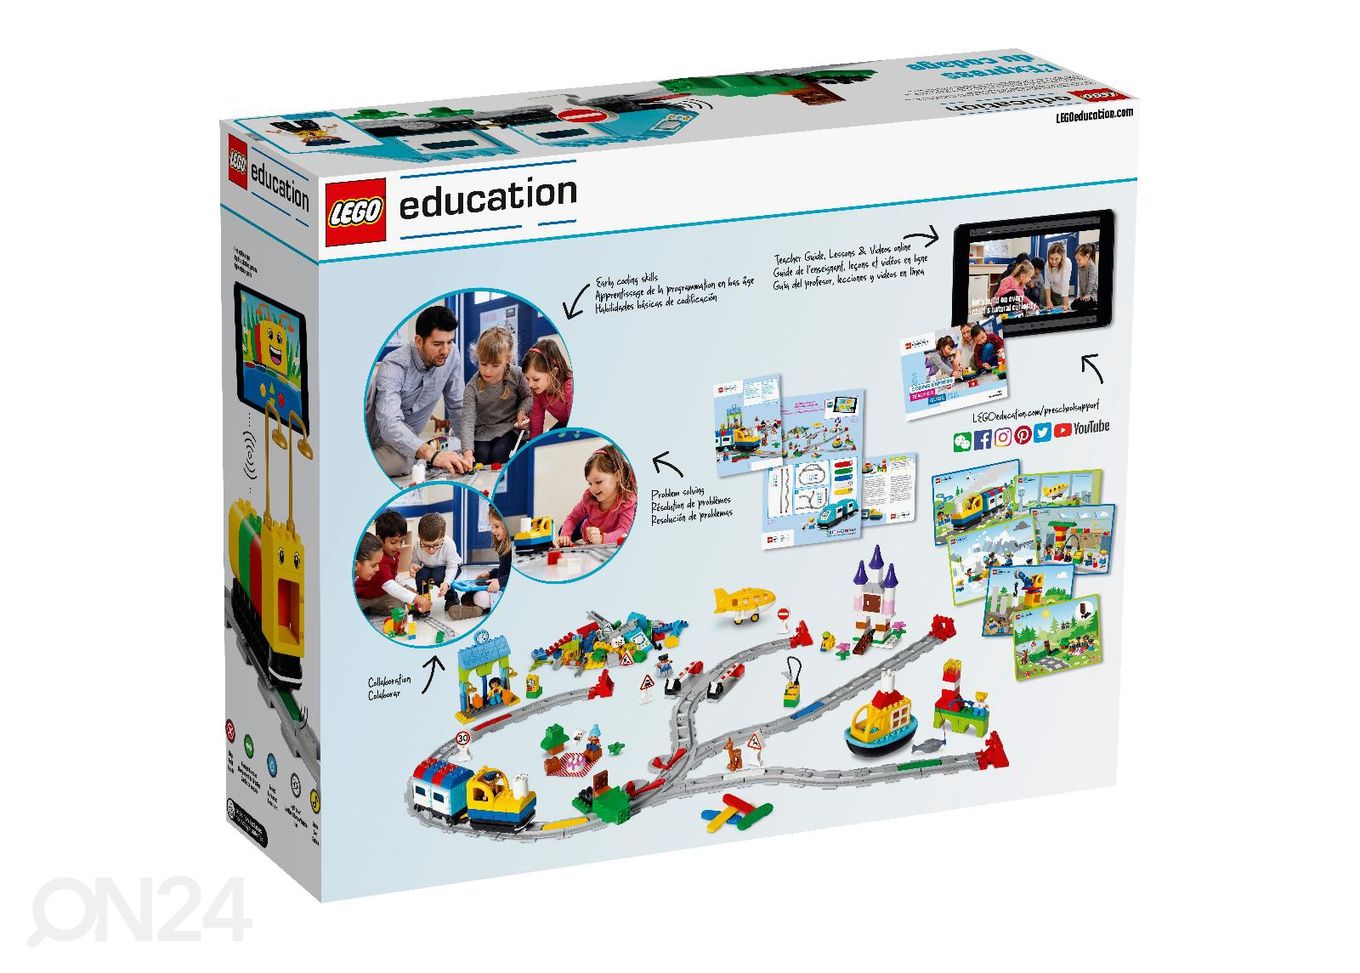 LEGO Education Coding Express suurendatud